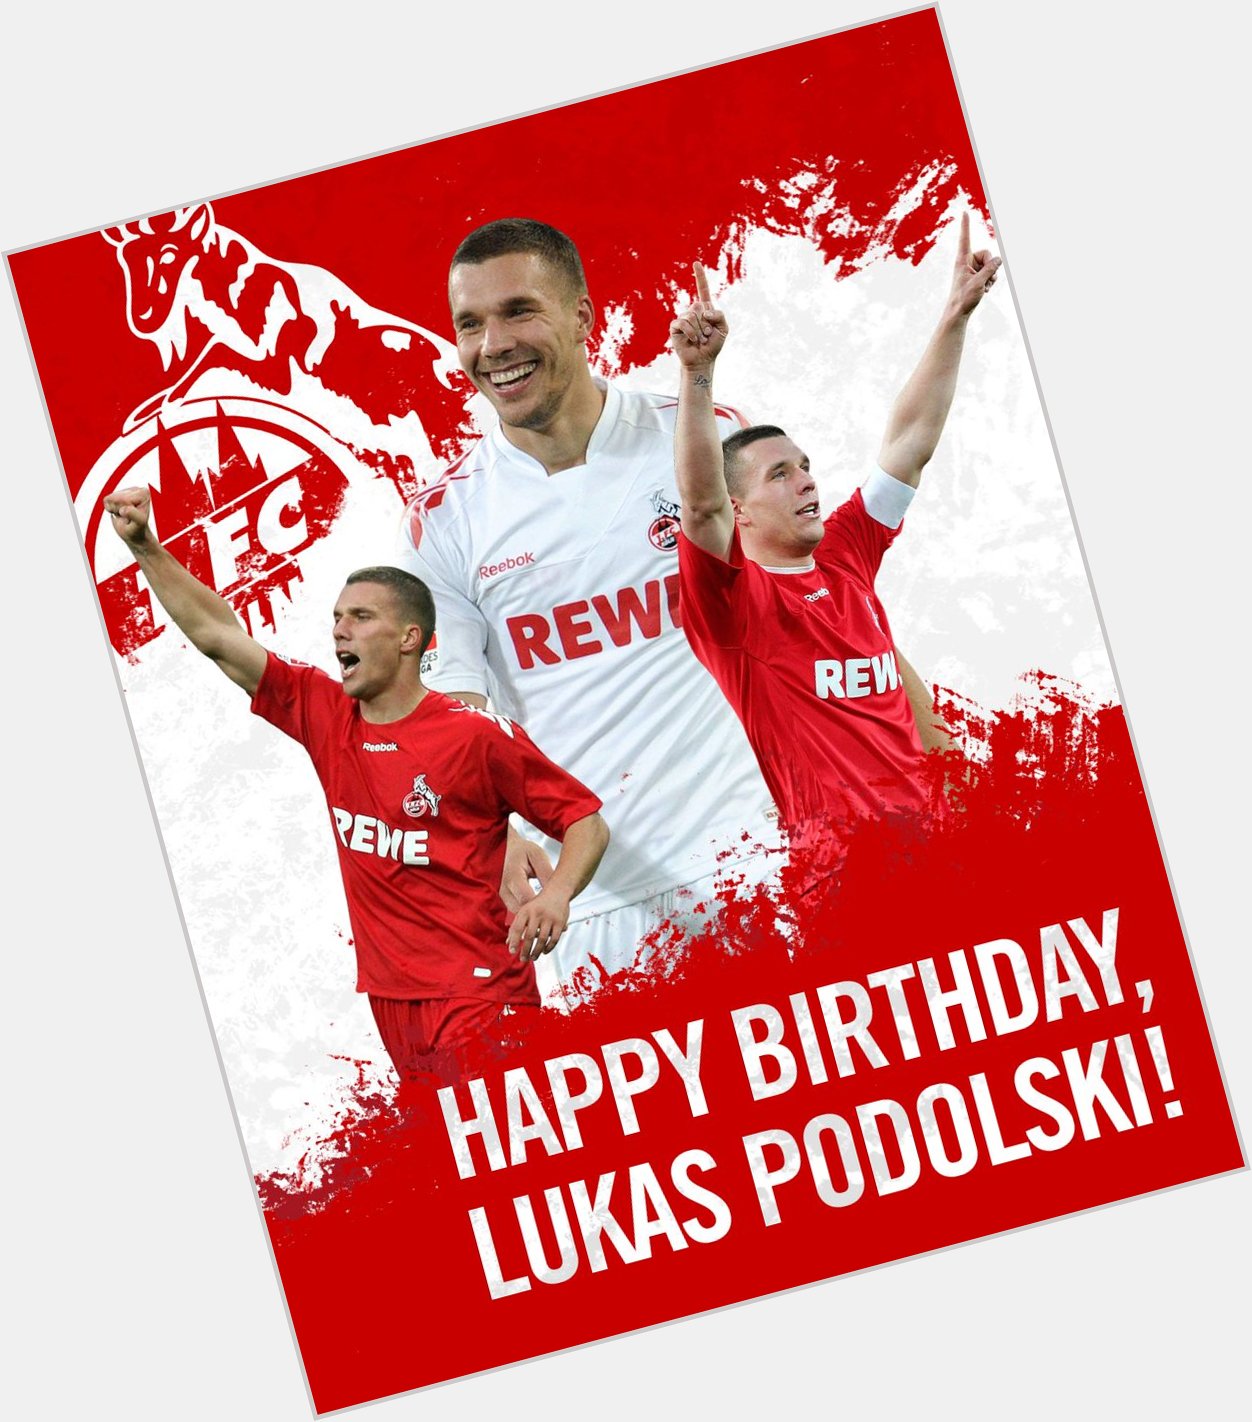 Ya ayan efsane Lukas Podolski 36 ya  nda! Happy birthday 